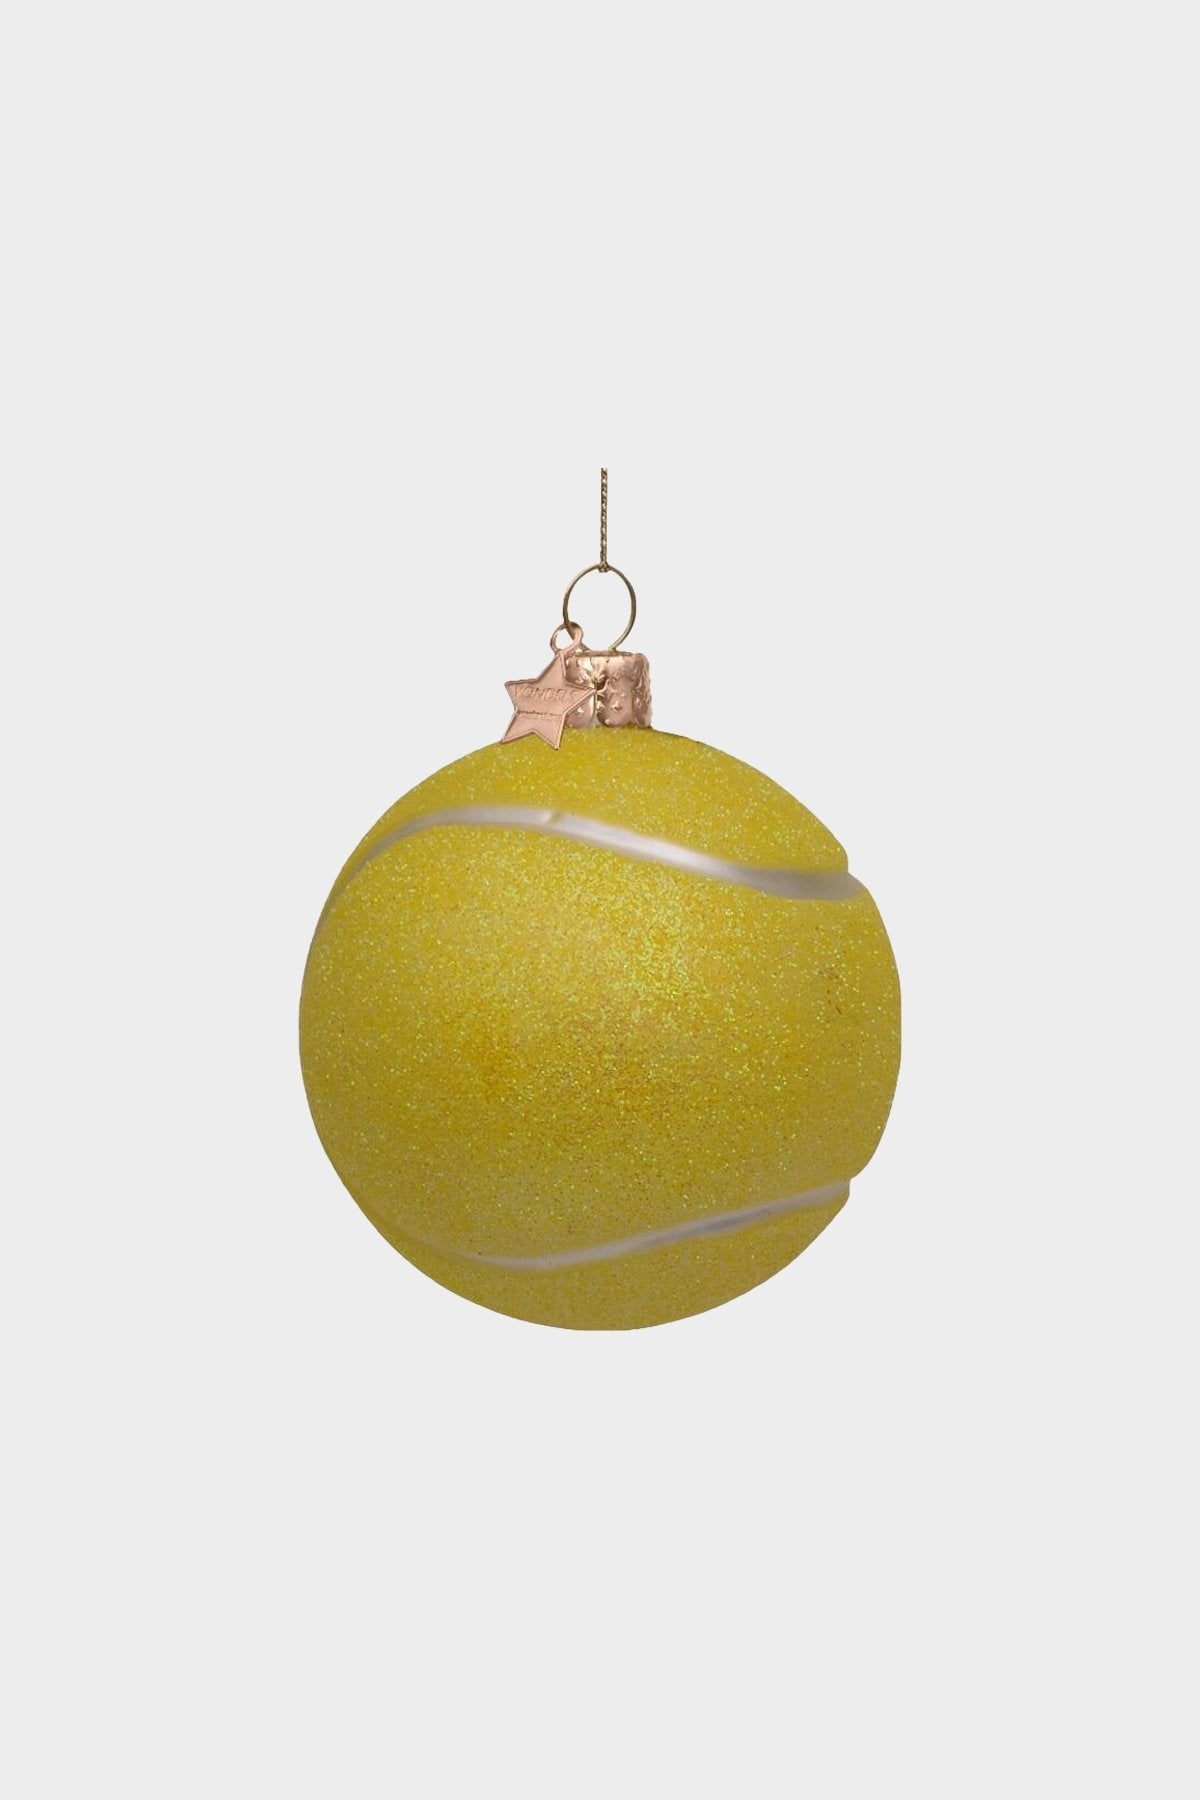 Ornament glass yellow tennis ball H8.5cm - shop-olivia.com